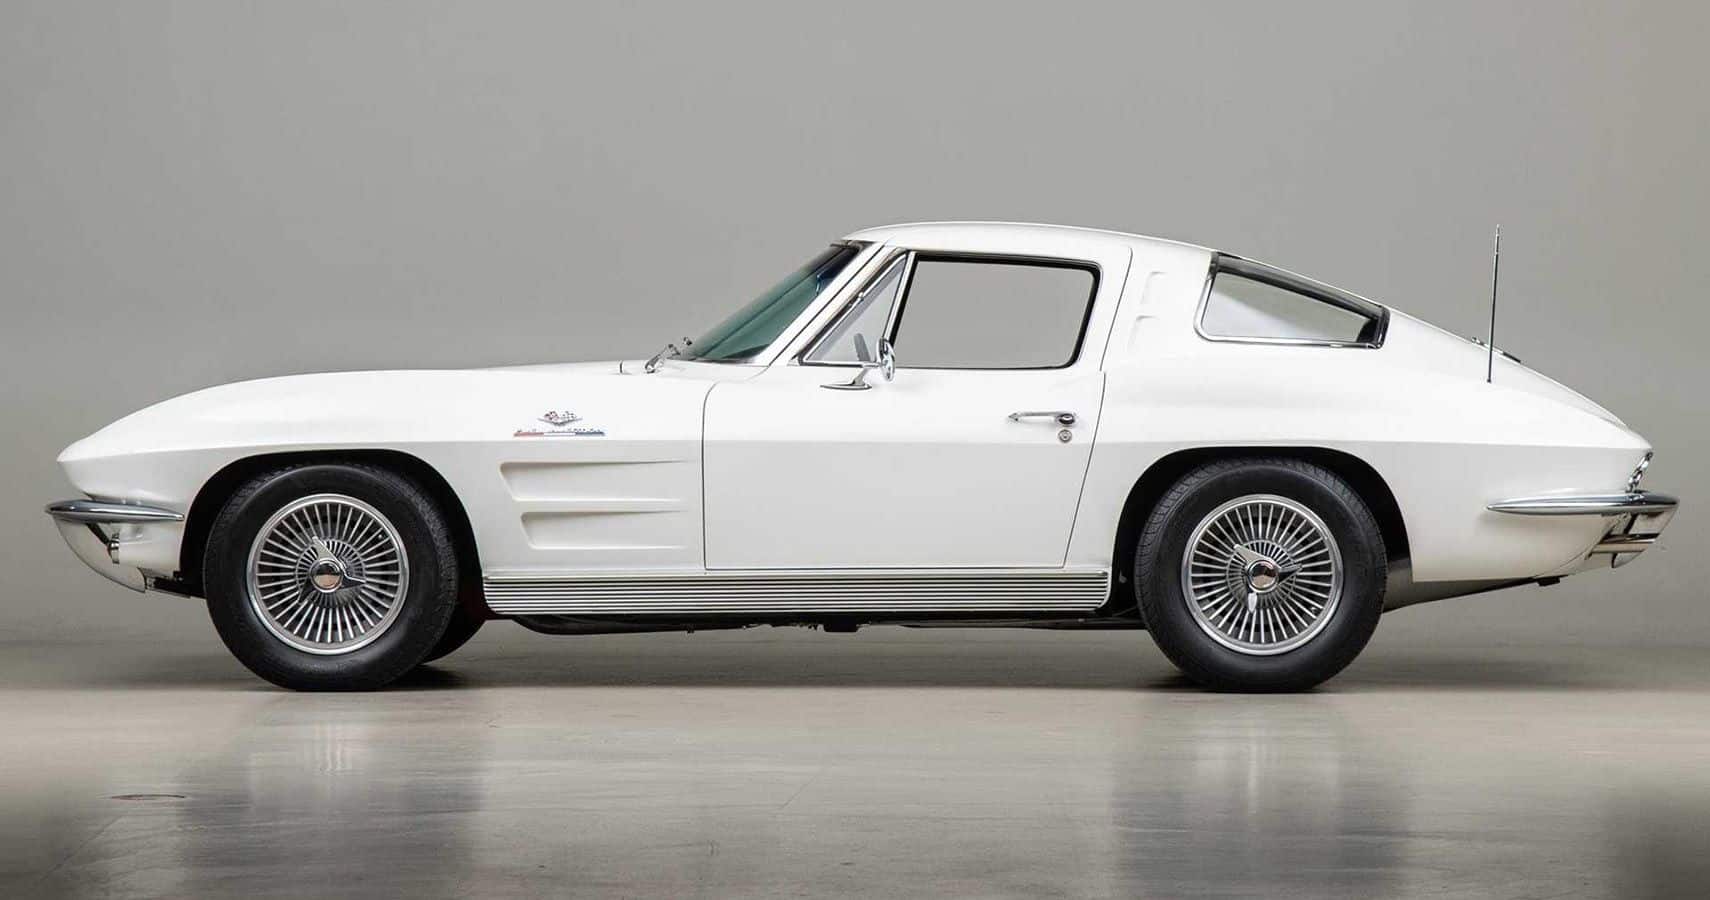 Un Chevrolet Corvette Split Window de 1963 en perfecto estado puede alcanzar fácilmente el triple de esa cantidad e incluso rozar los 200.000 dólares